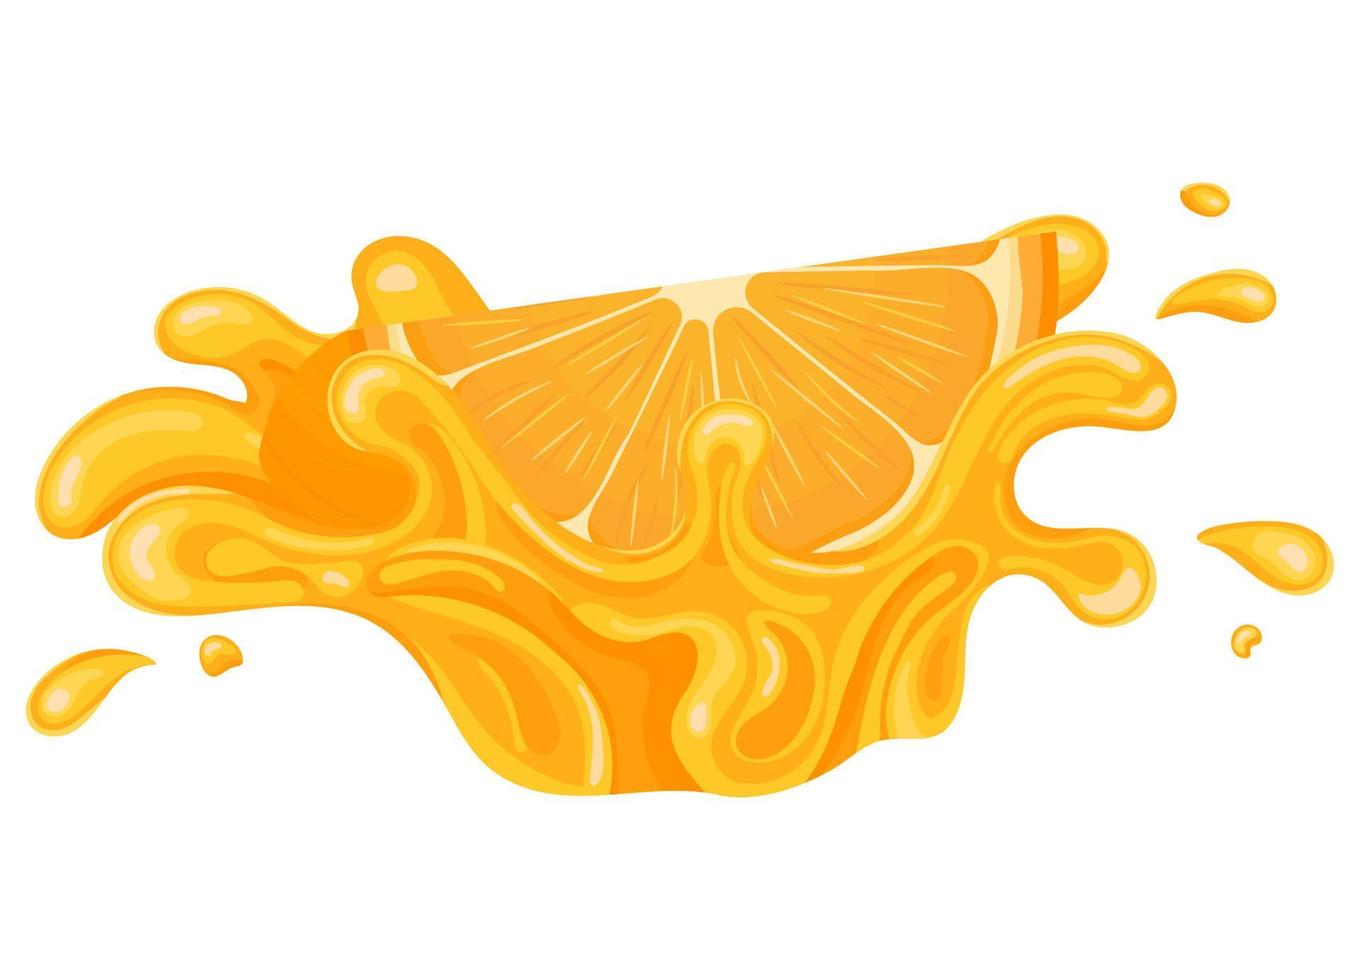 éclaboussures de jus d'orange vif frais, de mandarine ou de tagine éclatées isolées sur fond blanc. jus de fruits d'été. style bande dessinée. illustration vectorielle pour toute conception. vecteur